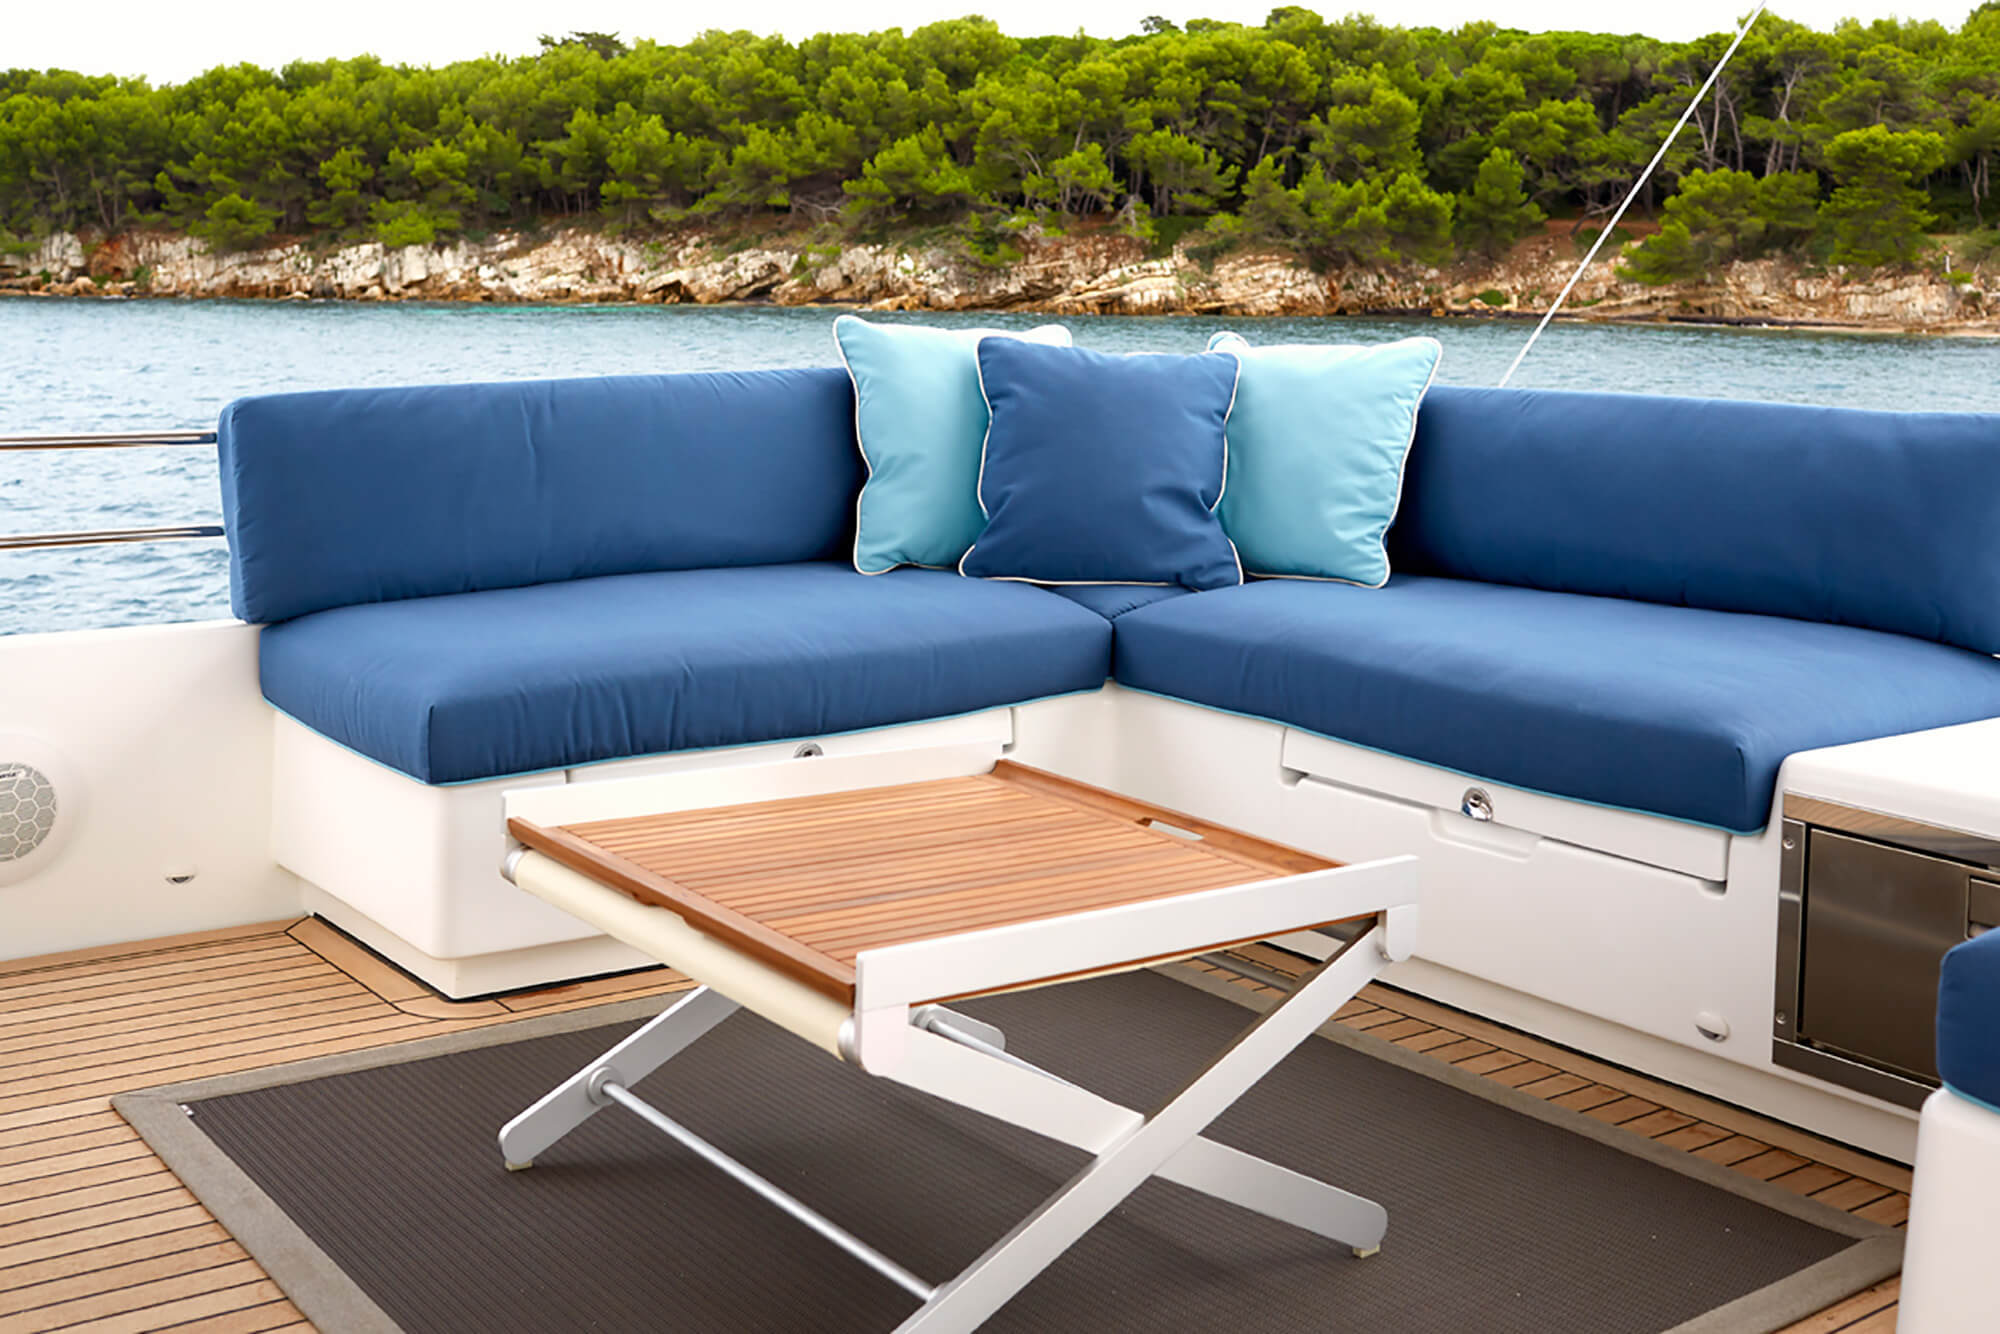 双体船上，采用不同的蓝色 Sunbrella 家用织物制成的坐垫与枕头